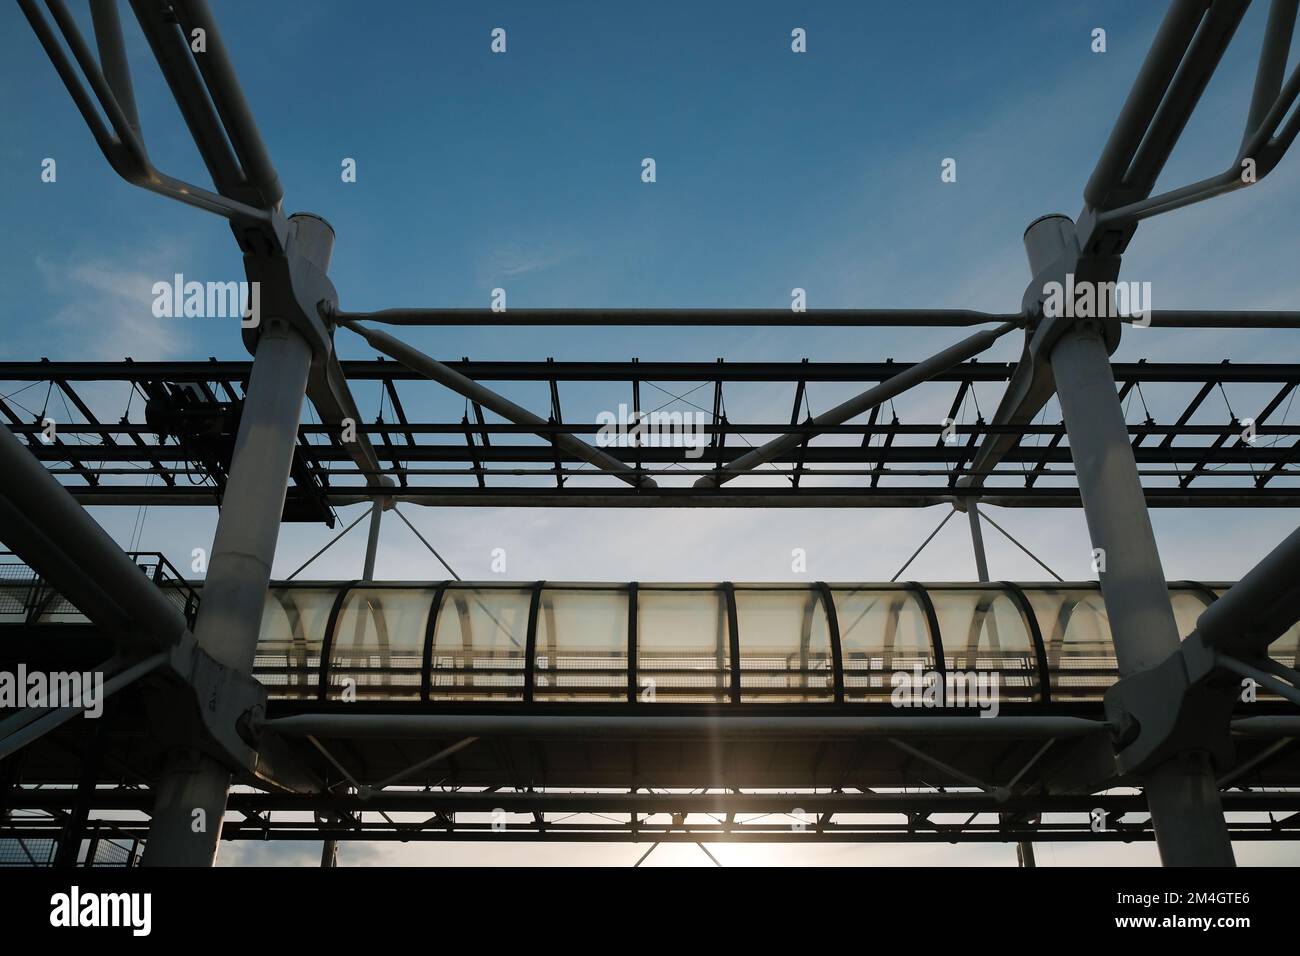 Paris, Frankreich: Das Centre Pompidou im Glas- und Stahldesign. Hightech-Architektur des Nationalmuseums für Moderne Kunst in Europa. Horizontaler Hintergrund. Stockfoto